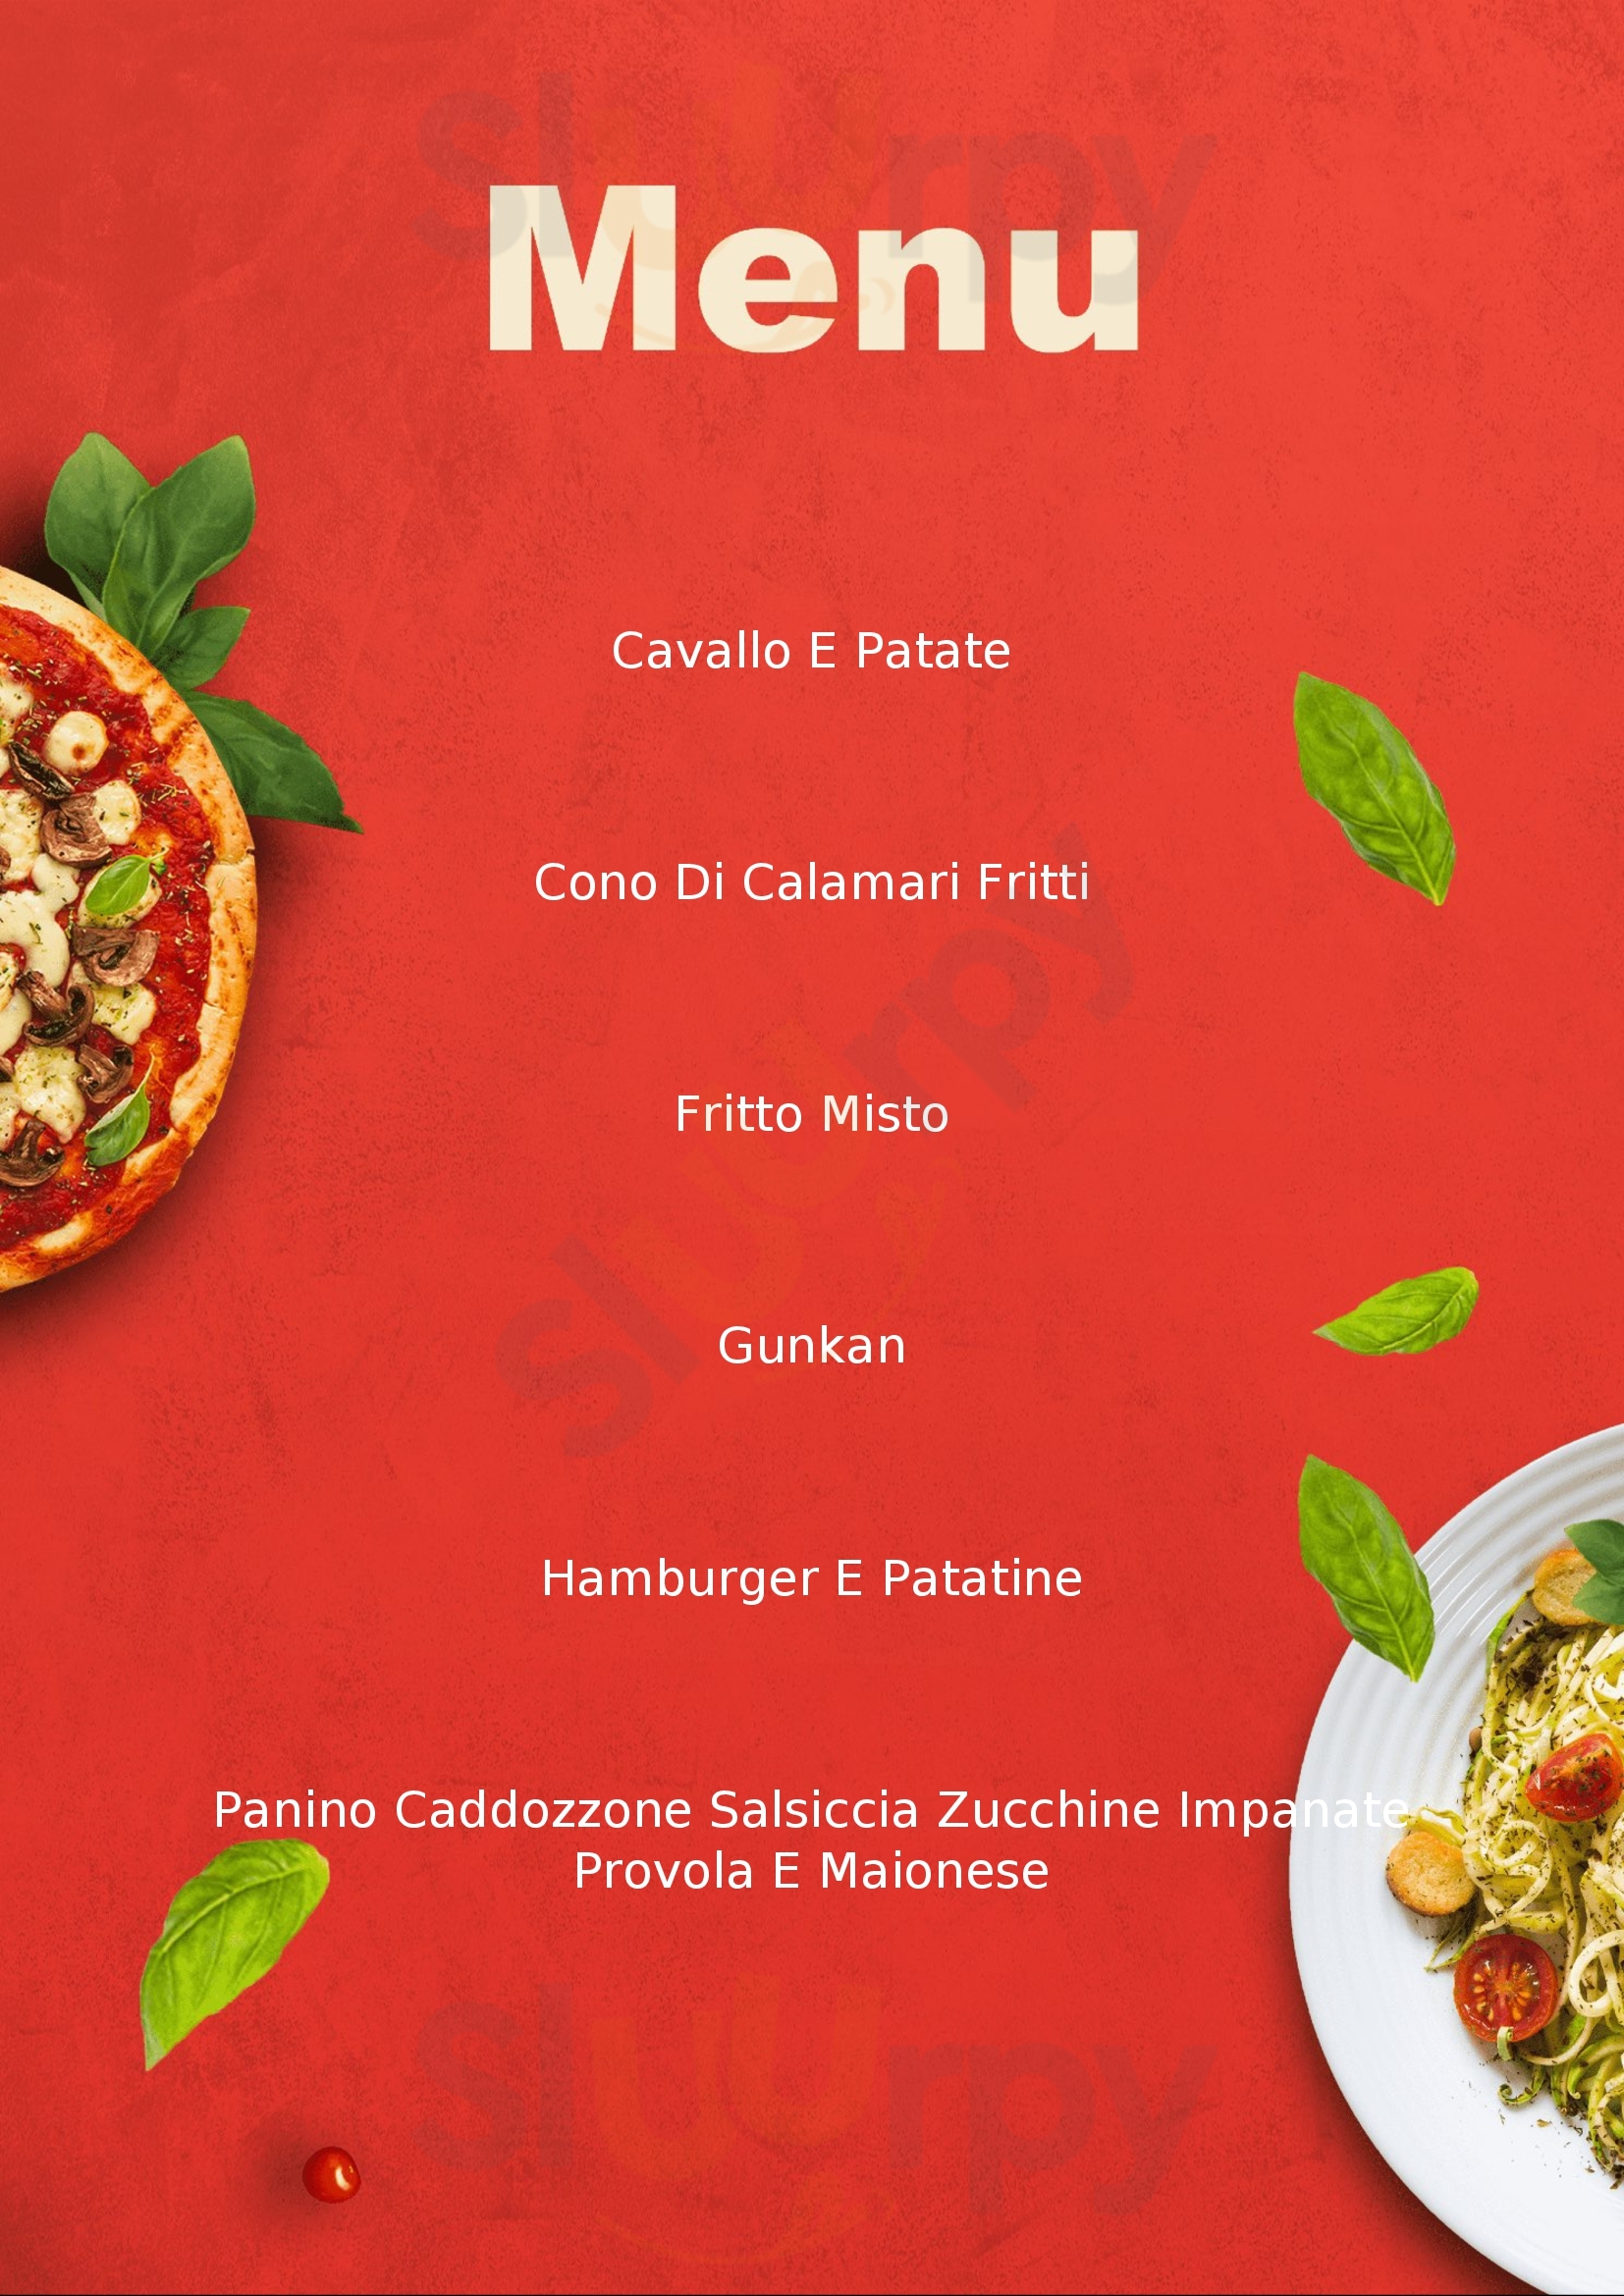 Pizzeria Cavalluccio Marino Cagliari menù 1 pagina